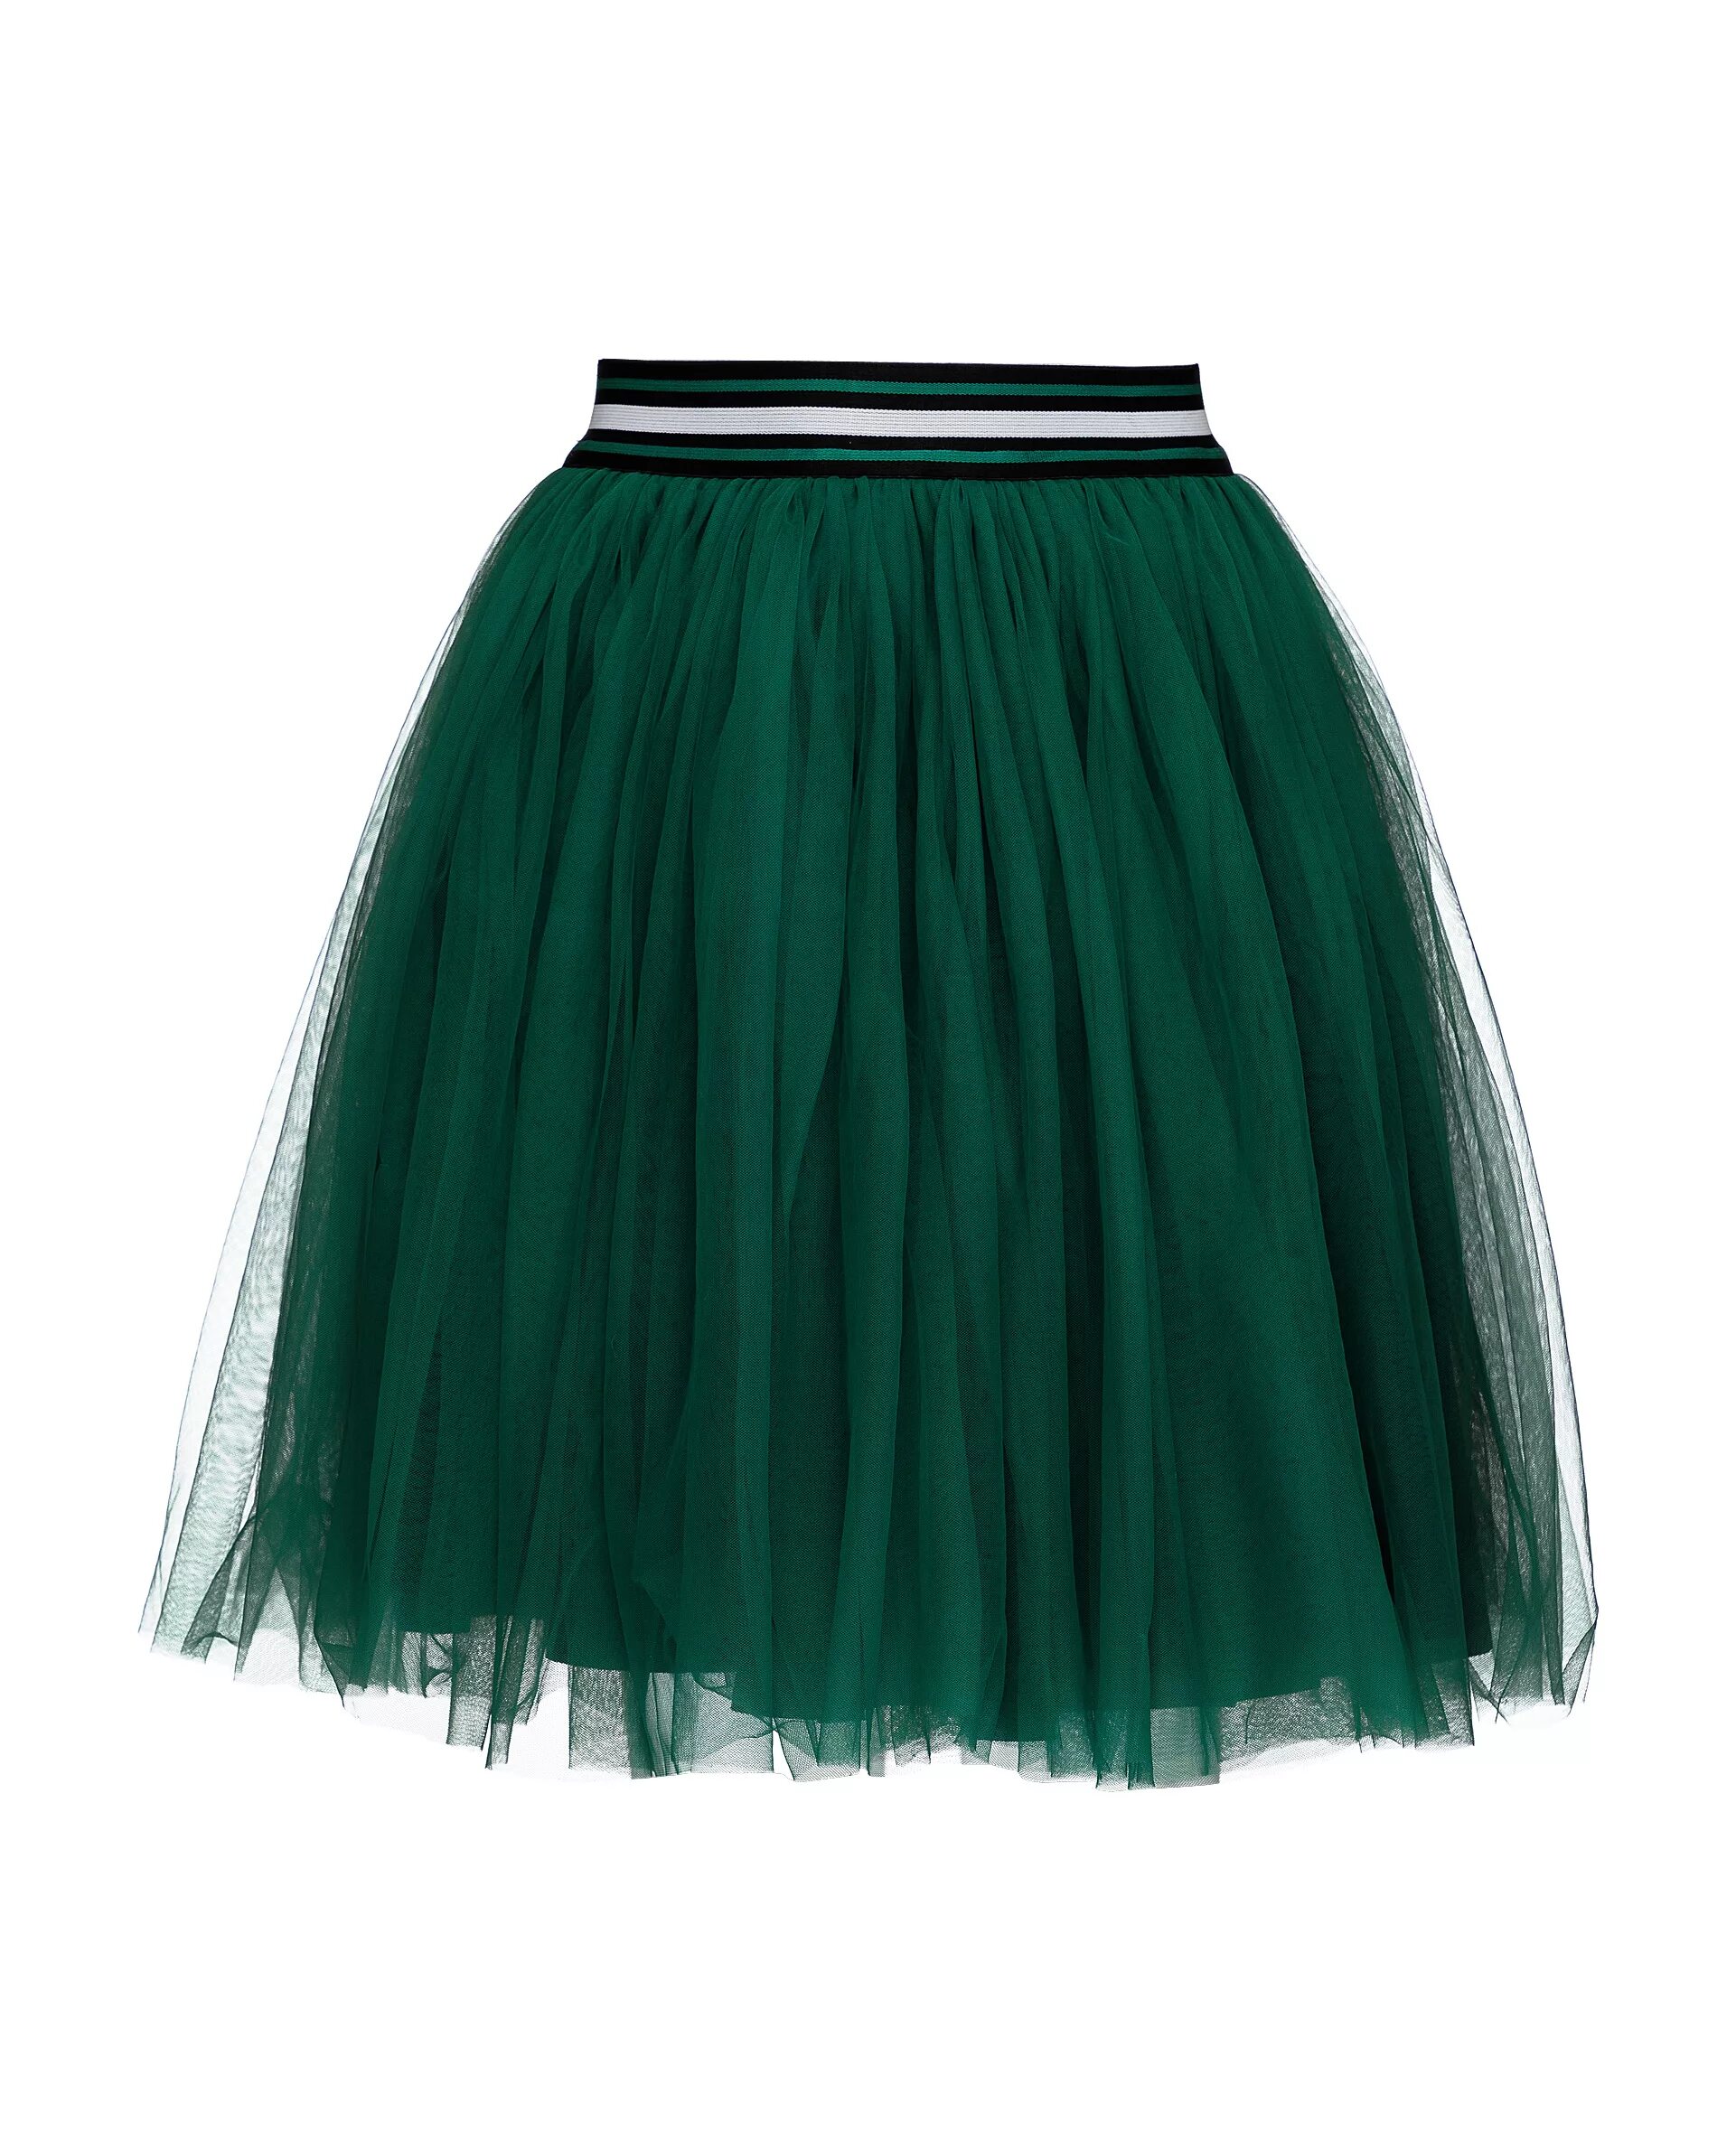 Гулливер юбка зеленая. Gulliver юбка салатовая. Gulliver юбка зеленая. Зеленая юбка для девочки.